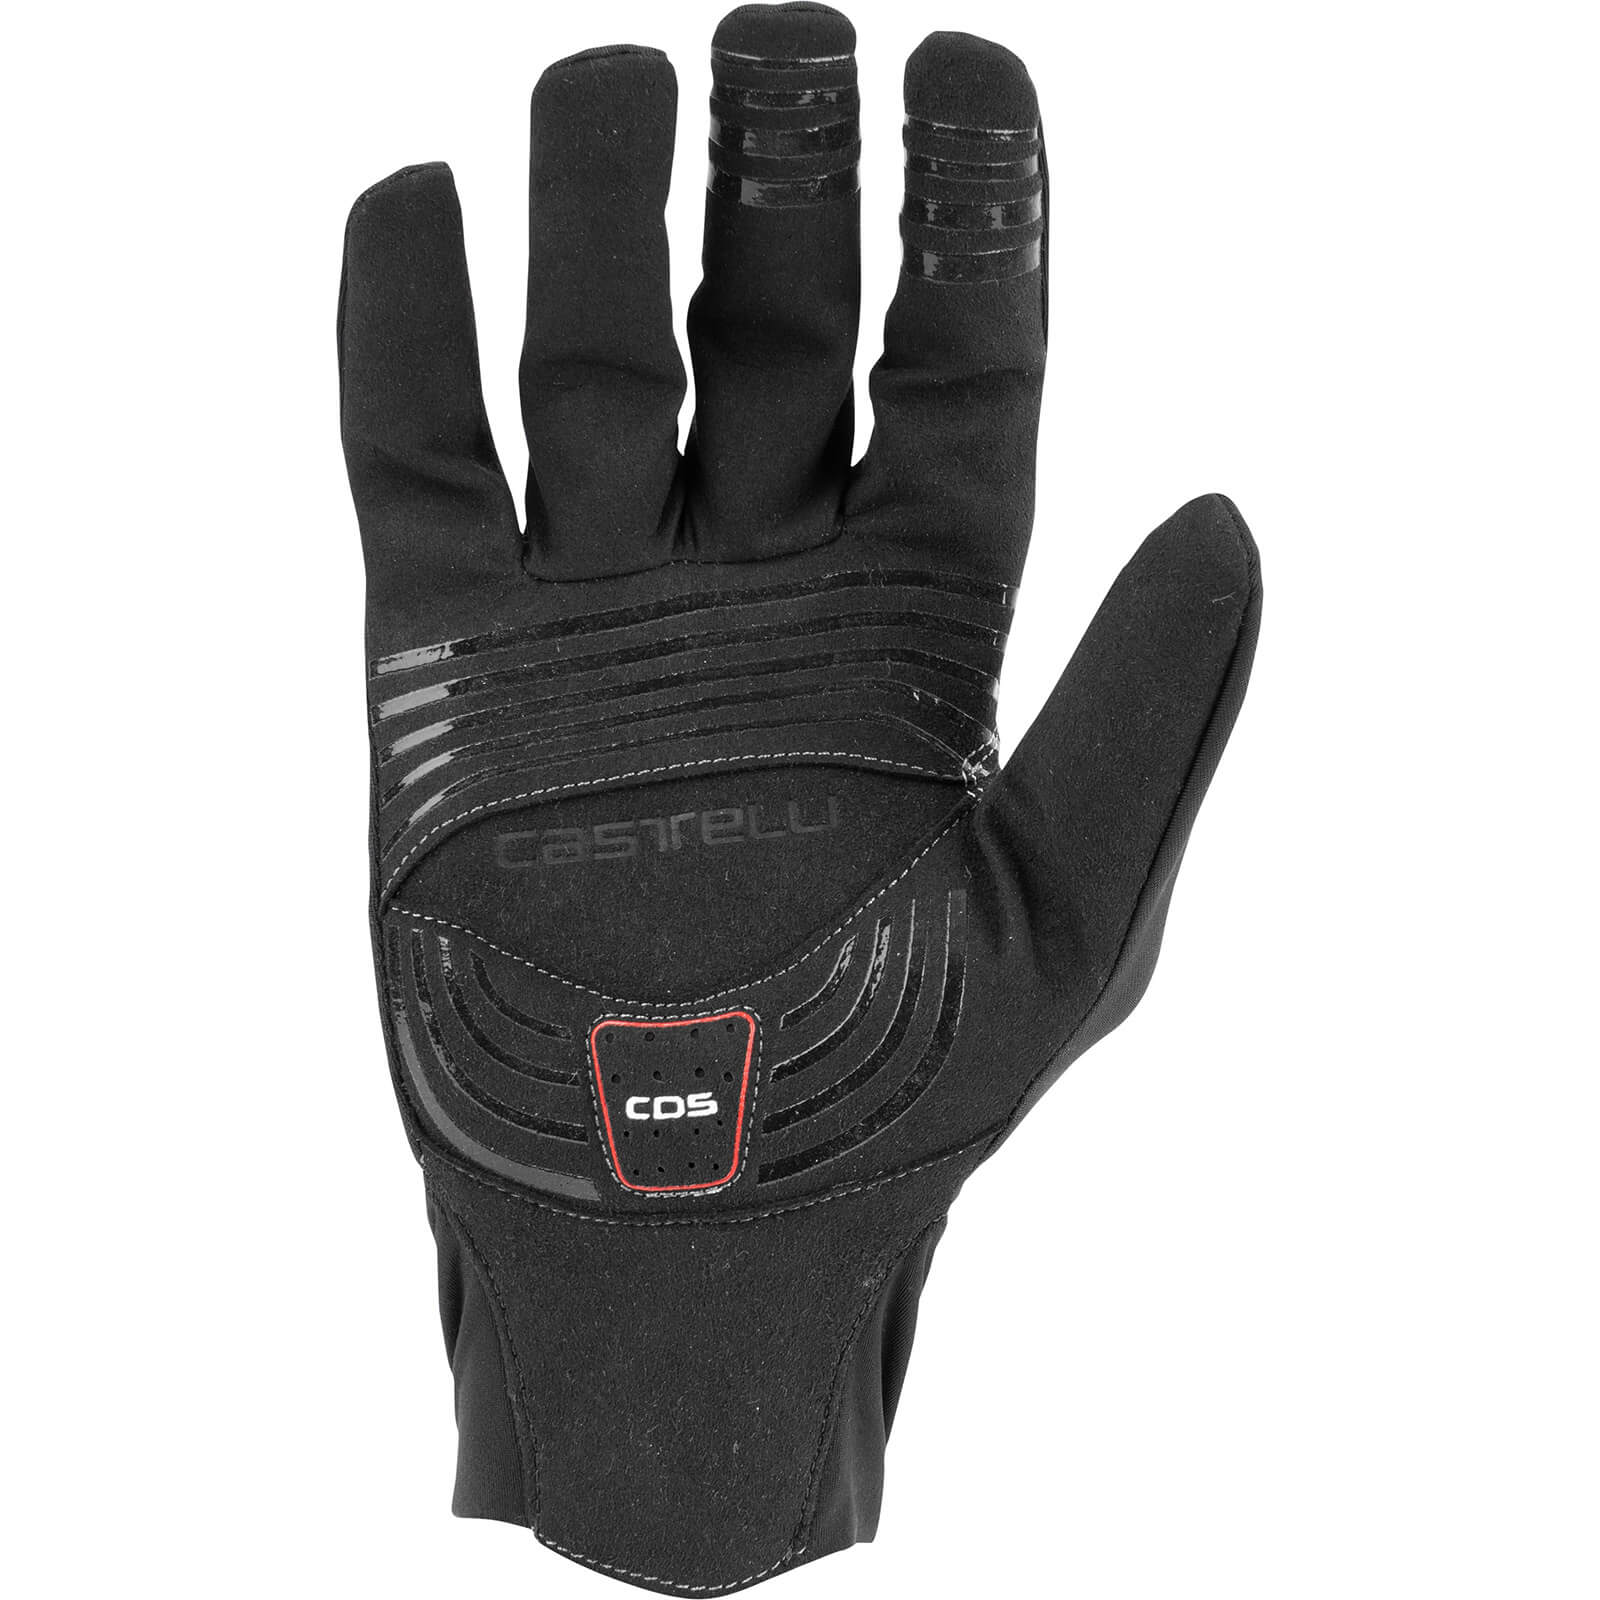 Castelli Lightness 2 Gloves - AW21 - Black / Small